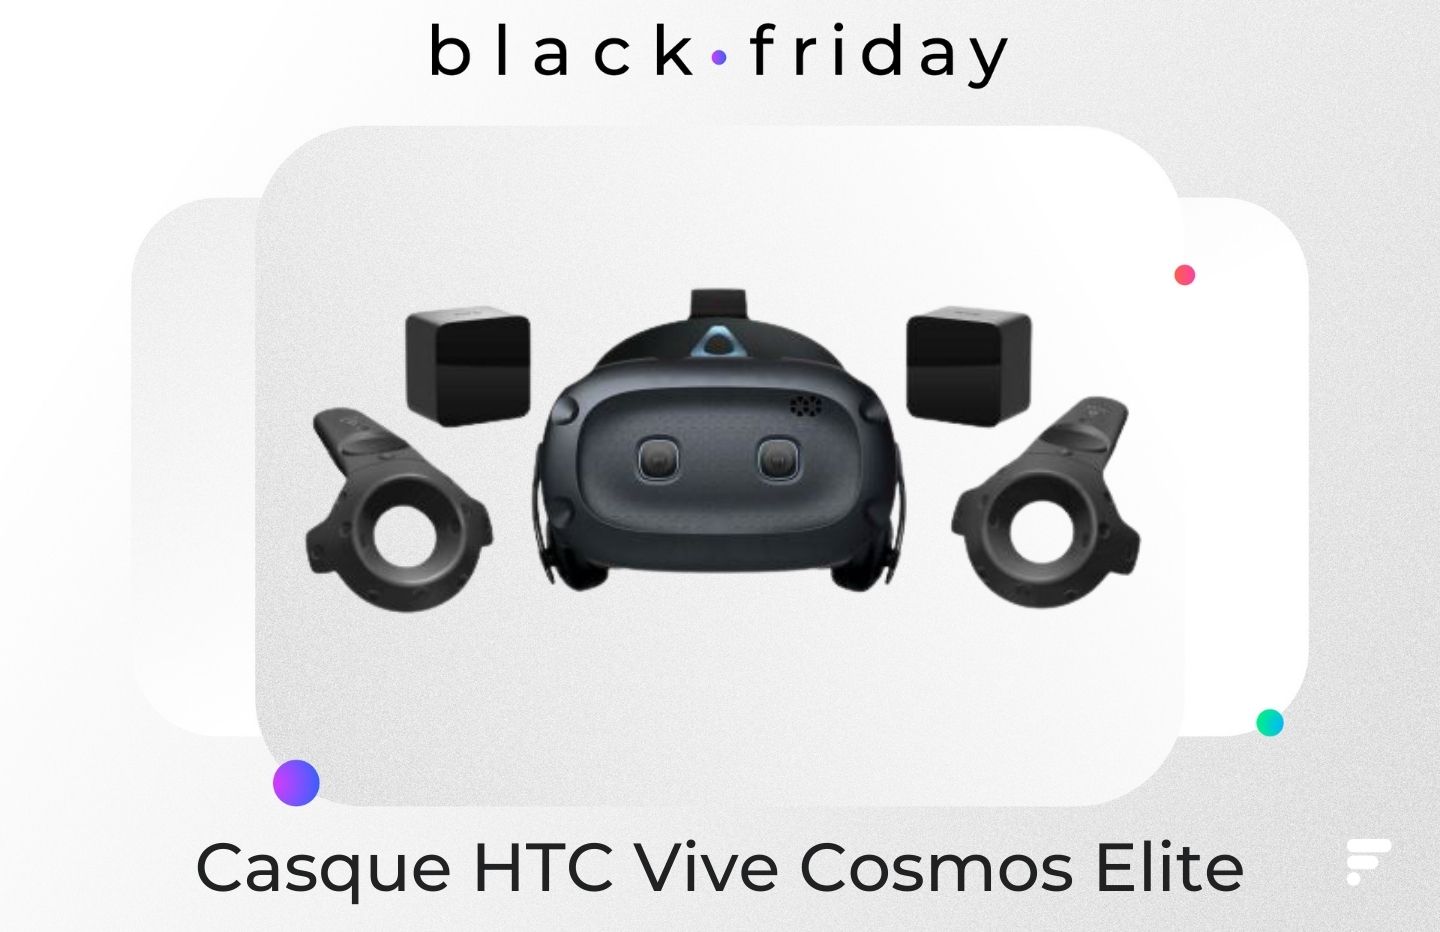 HTC Vive Cosmos Elite : ce casque VR premium est bien plus abordable pour le Black Friday